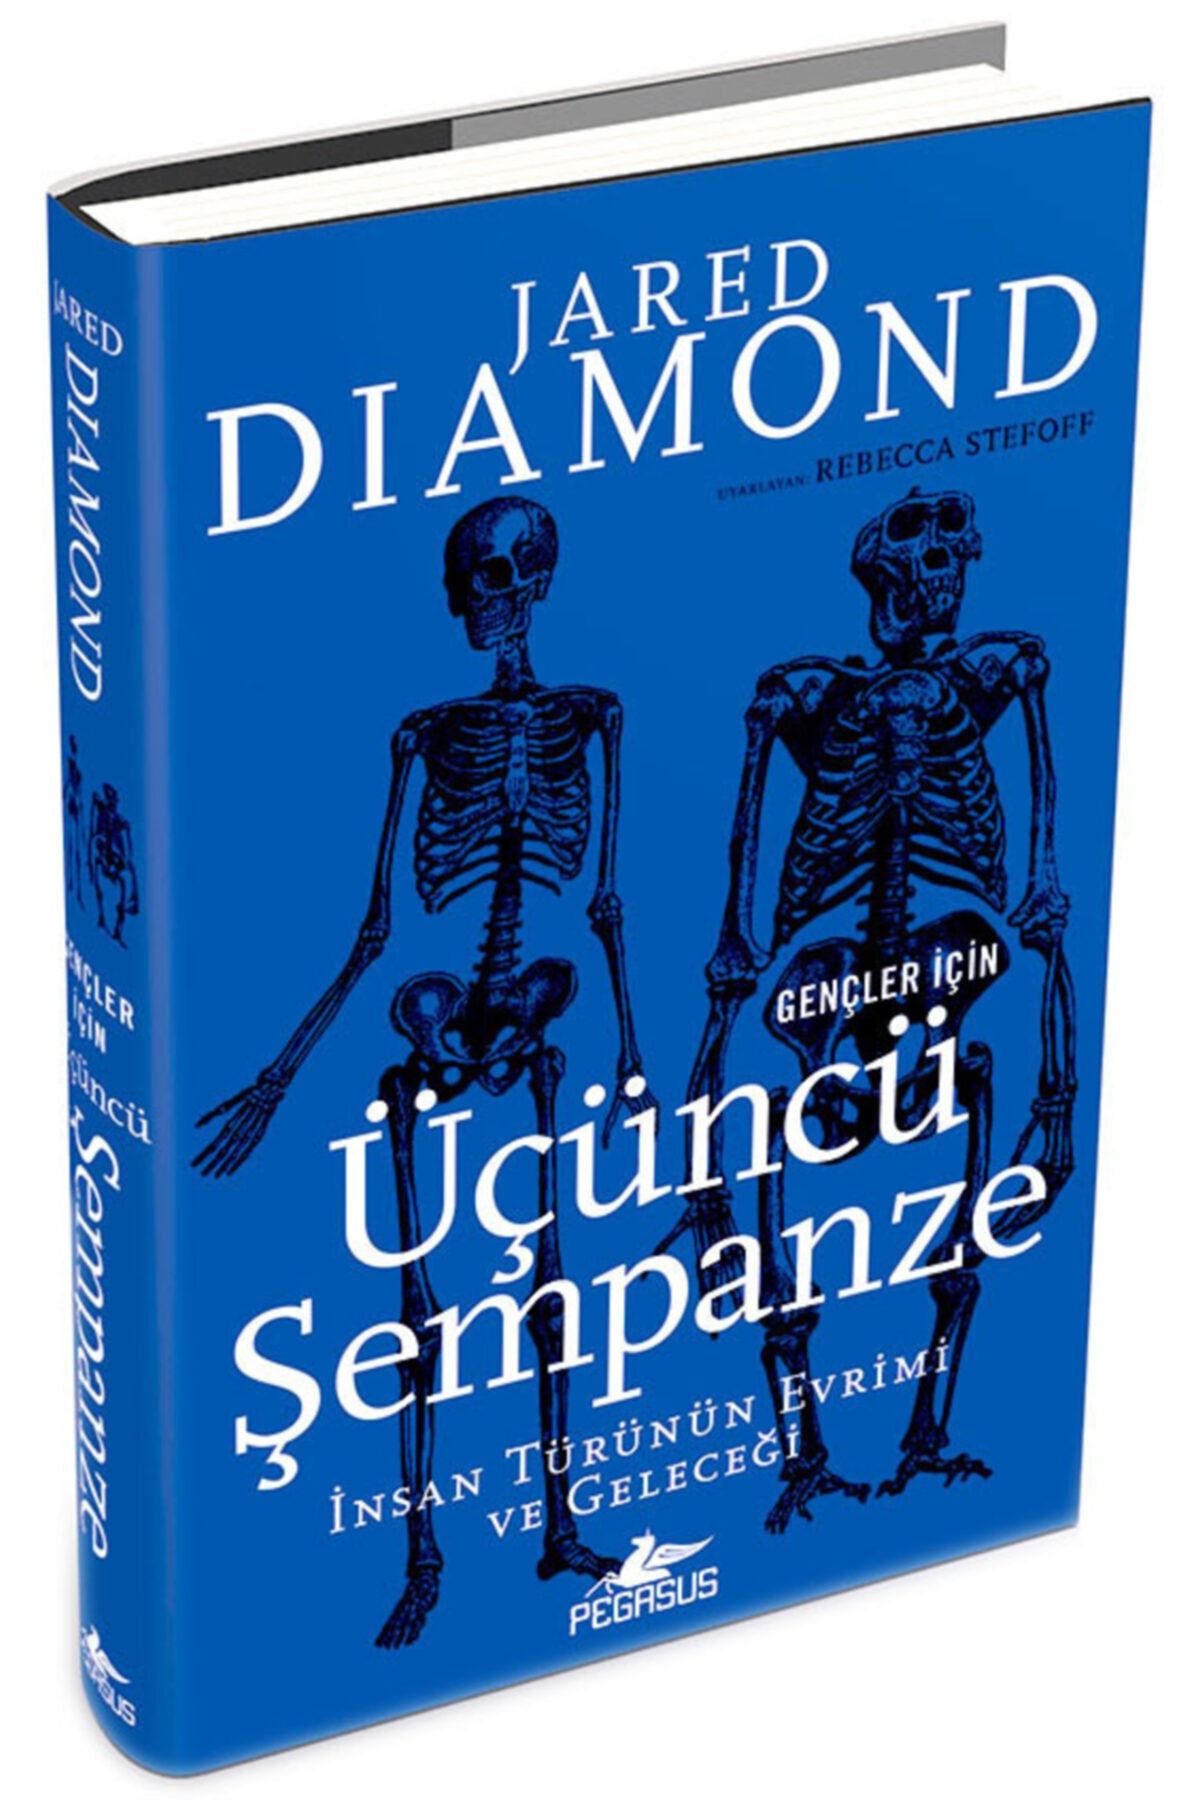 Pegasus Yayınları Gençler Için Üçüncü Şempanze: Insan Türünün Evrimi Ve Geleceği - Ciltli - Jared Diamond